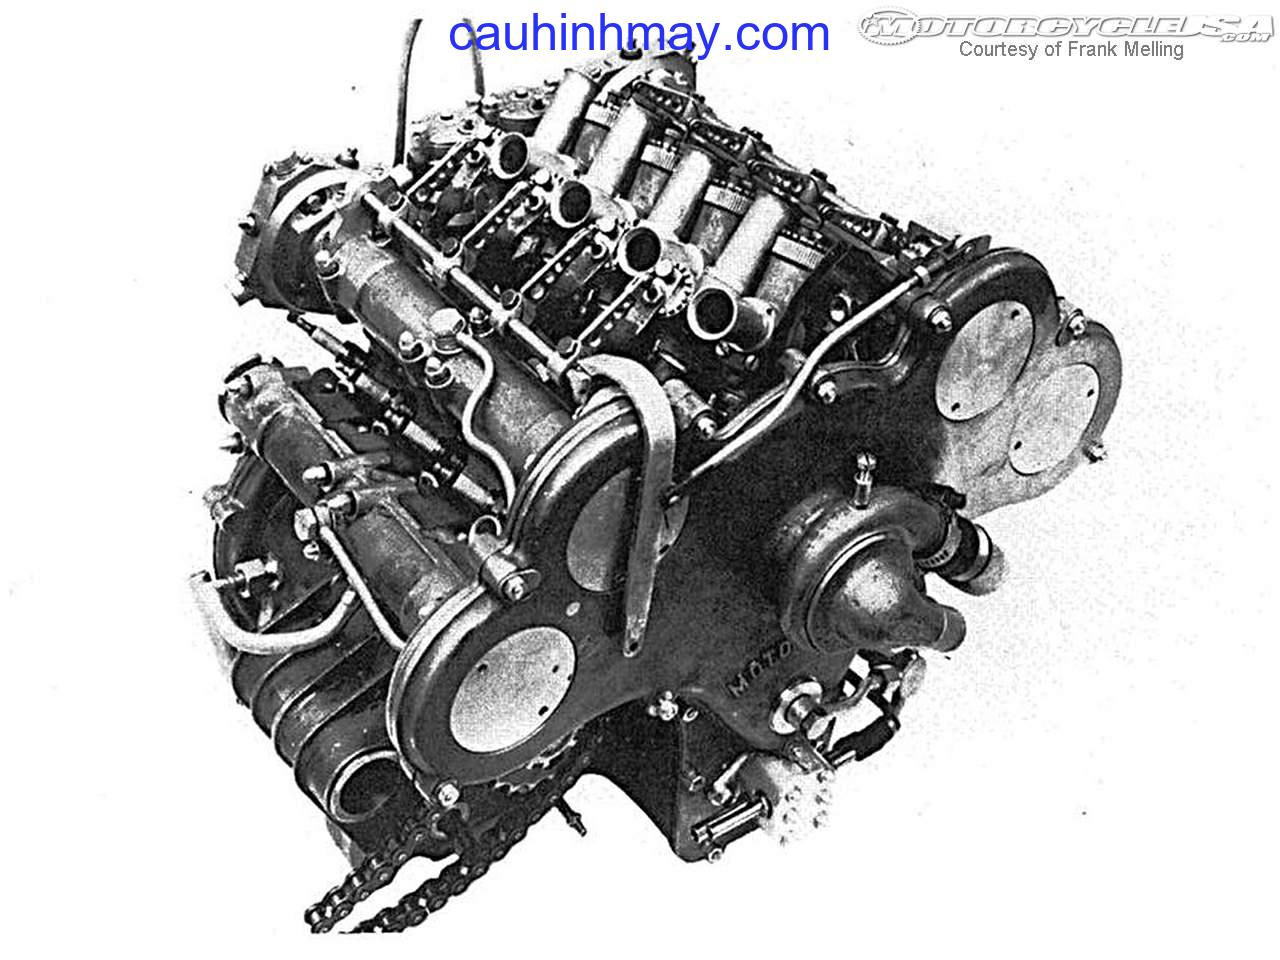 MOTO GUZZI V8 1956-57 - cauhinhmay.com